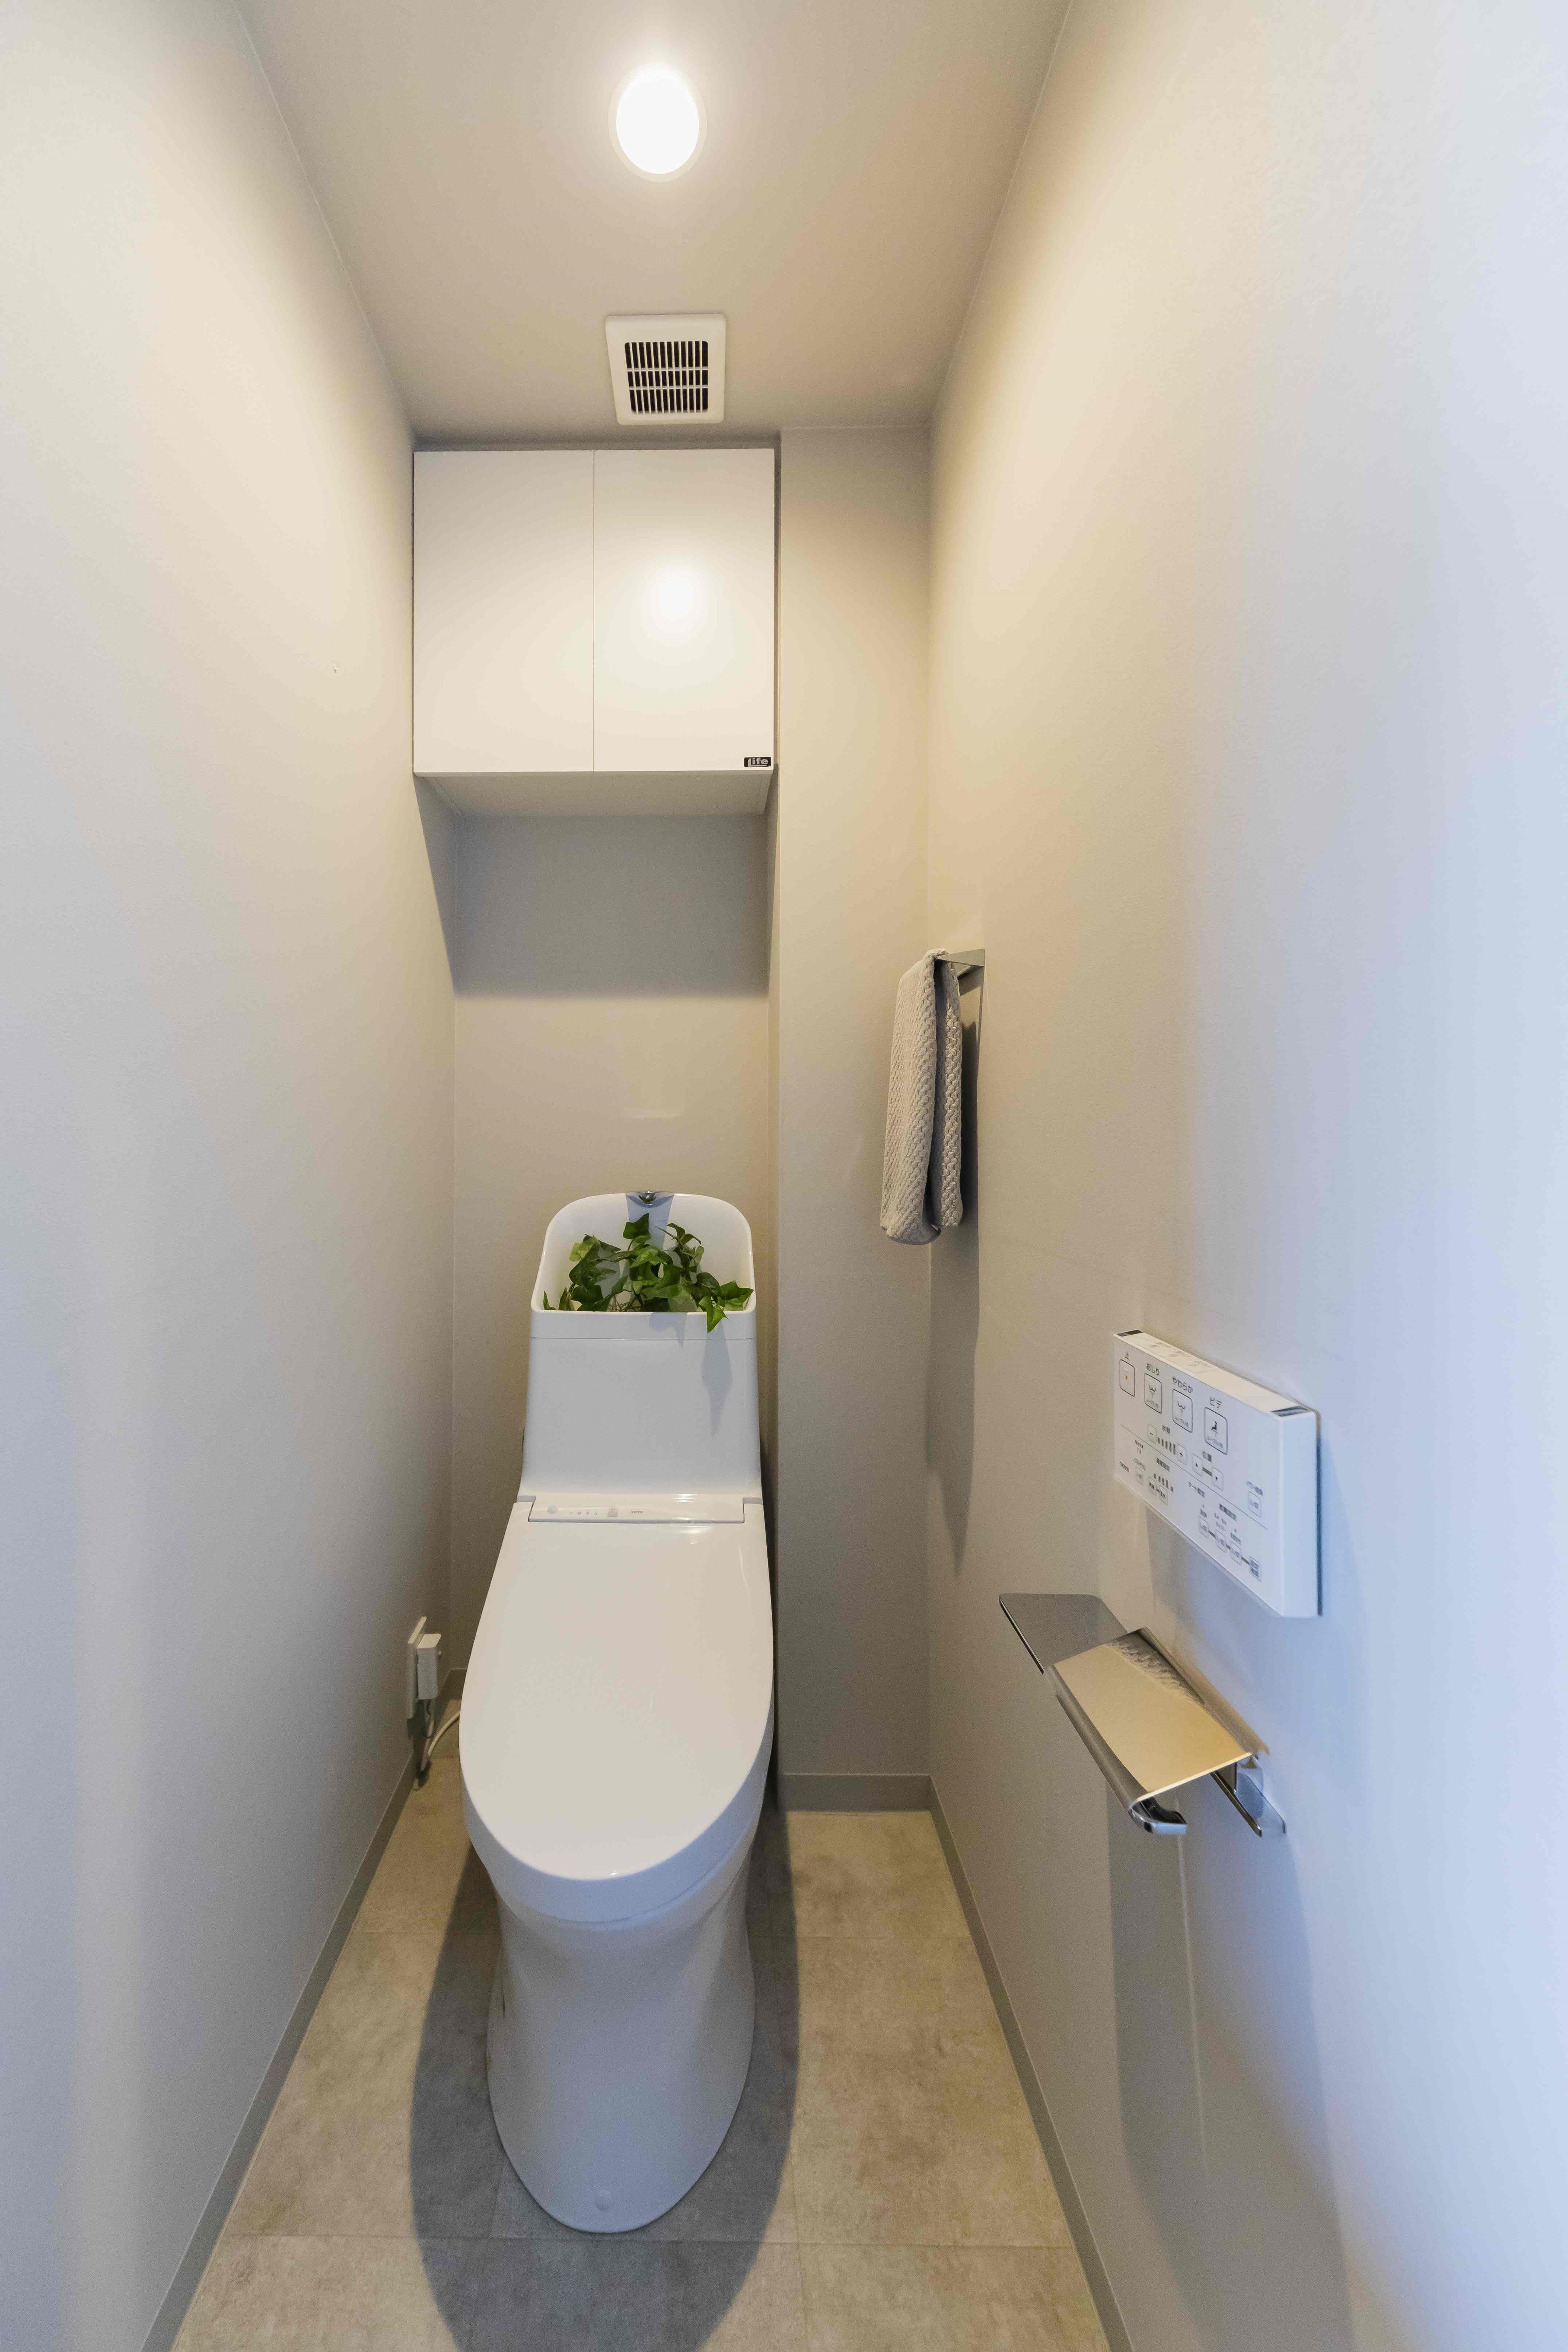 温水洗浄便座付トイレ。収納スペースを設置しており、トイレットペーパーや掃除用品をしまって頂けます。(2022年5月)